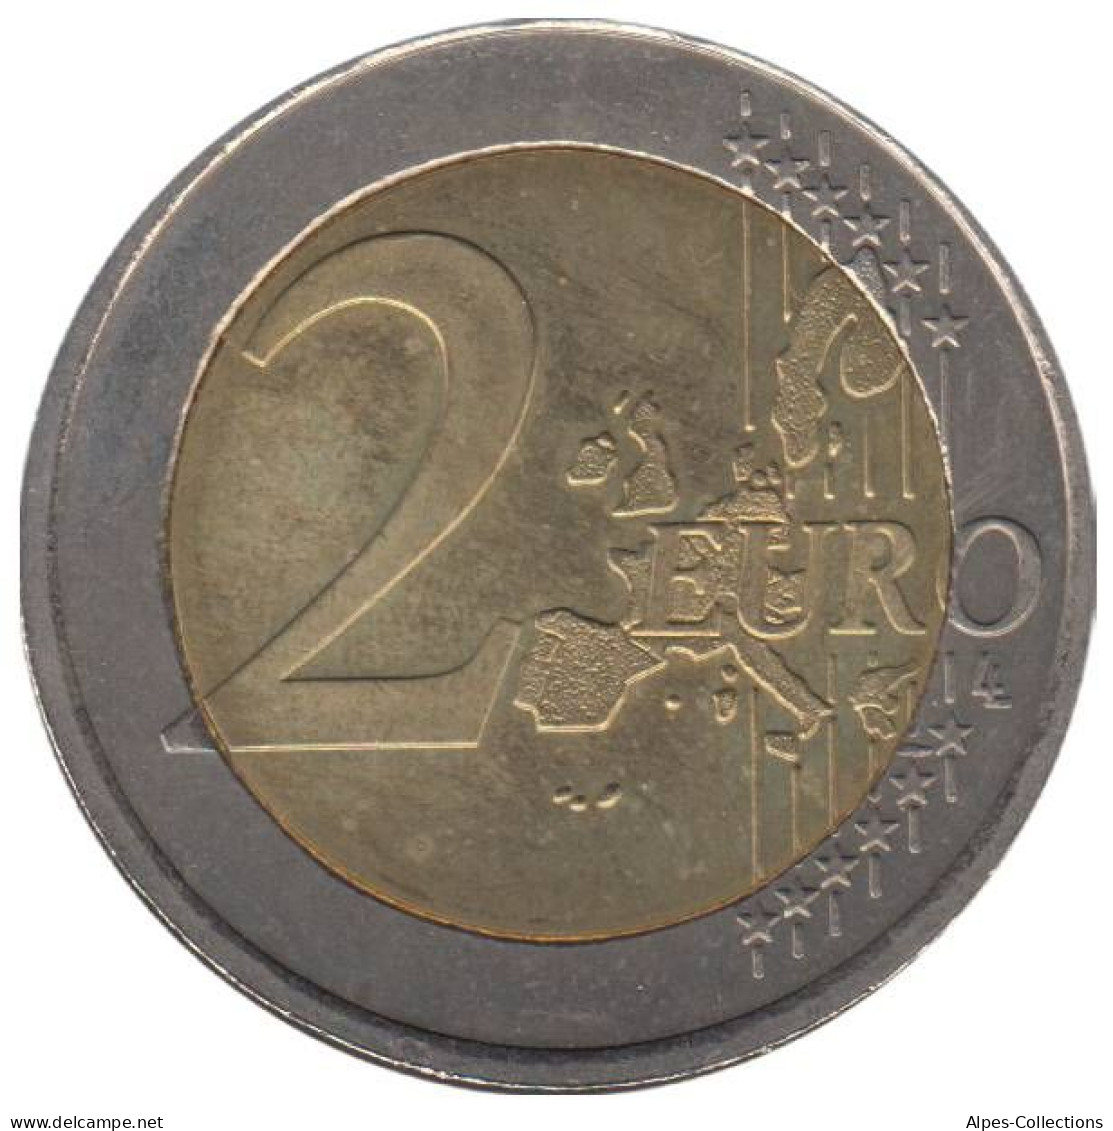 IR20005.1 - IRLANDE - 2 Euros - 2005 - Irlande